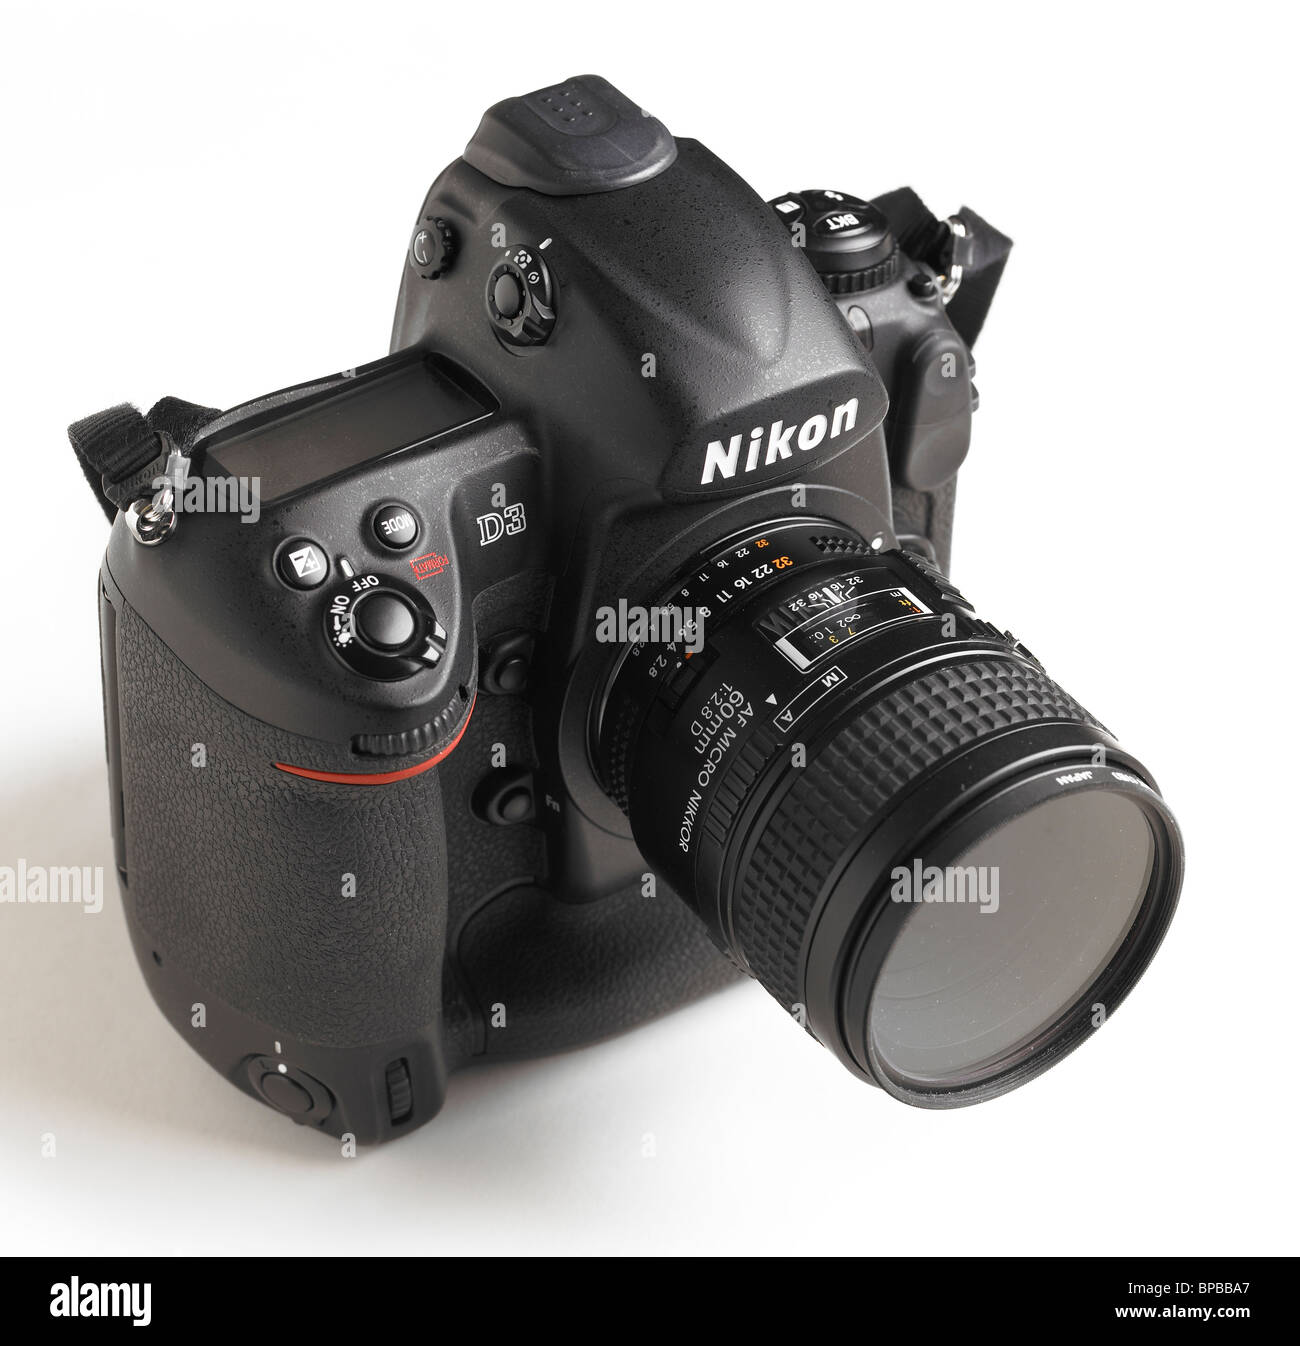 Nikon D3 Camera On White Background Stock Photo